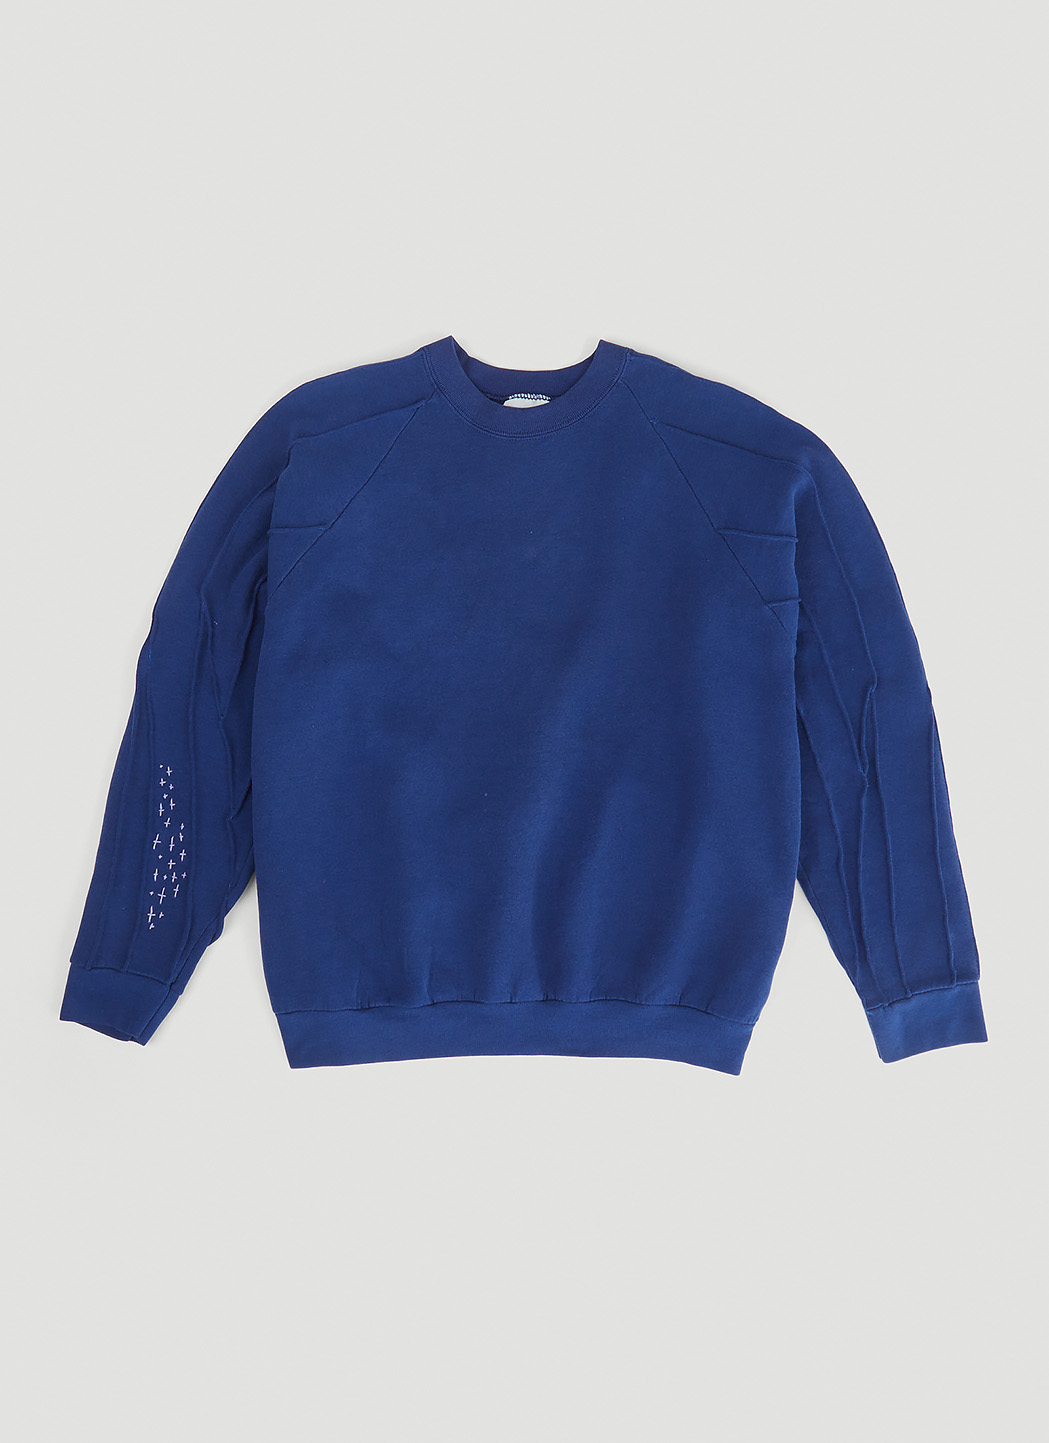 Embroidered Vintage Sweatshirt